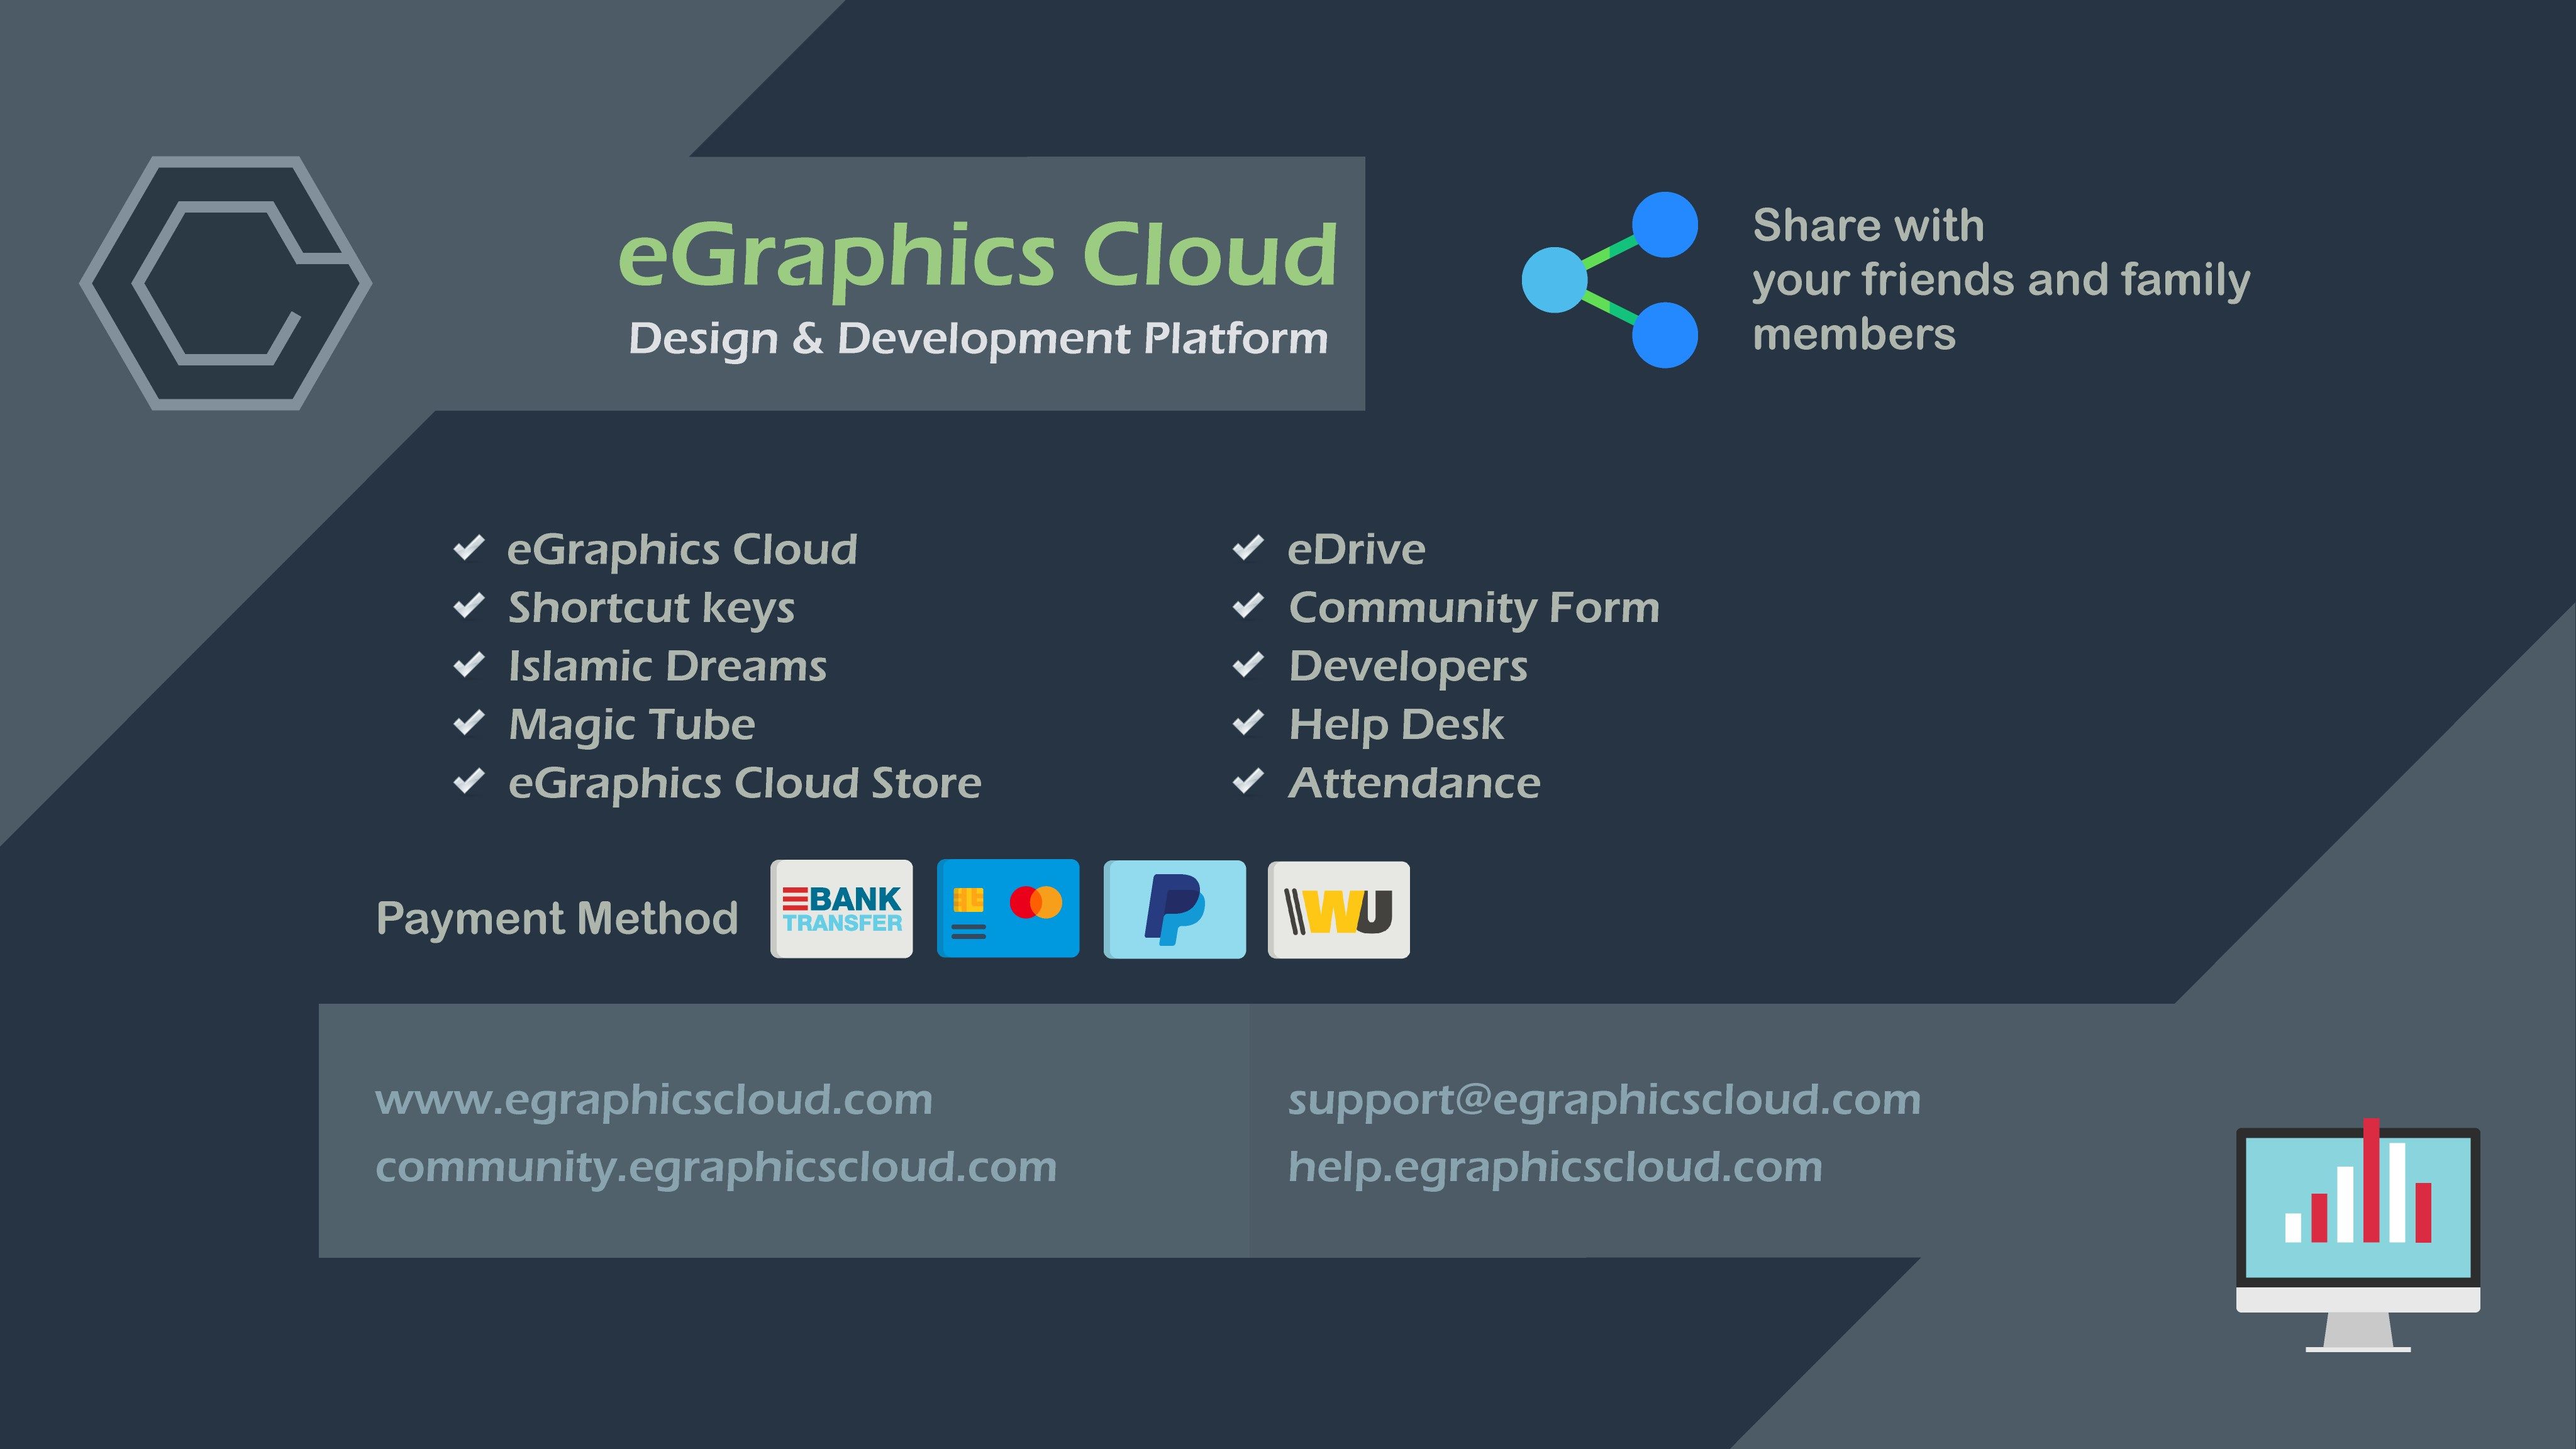 eGraphics Cloud Services Ads